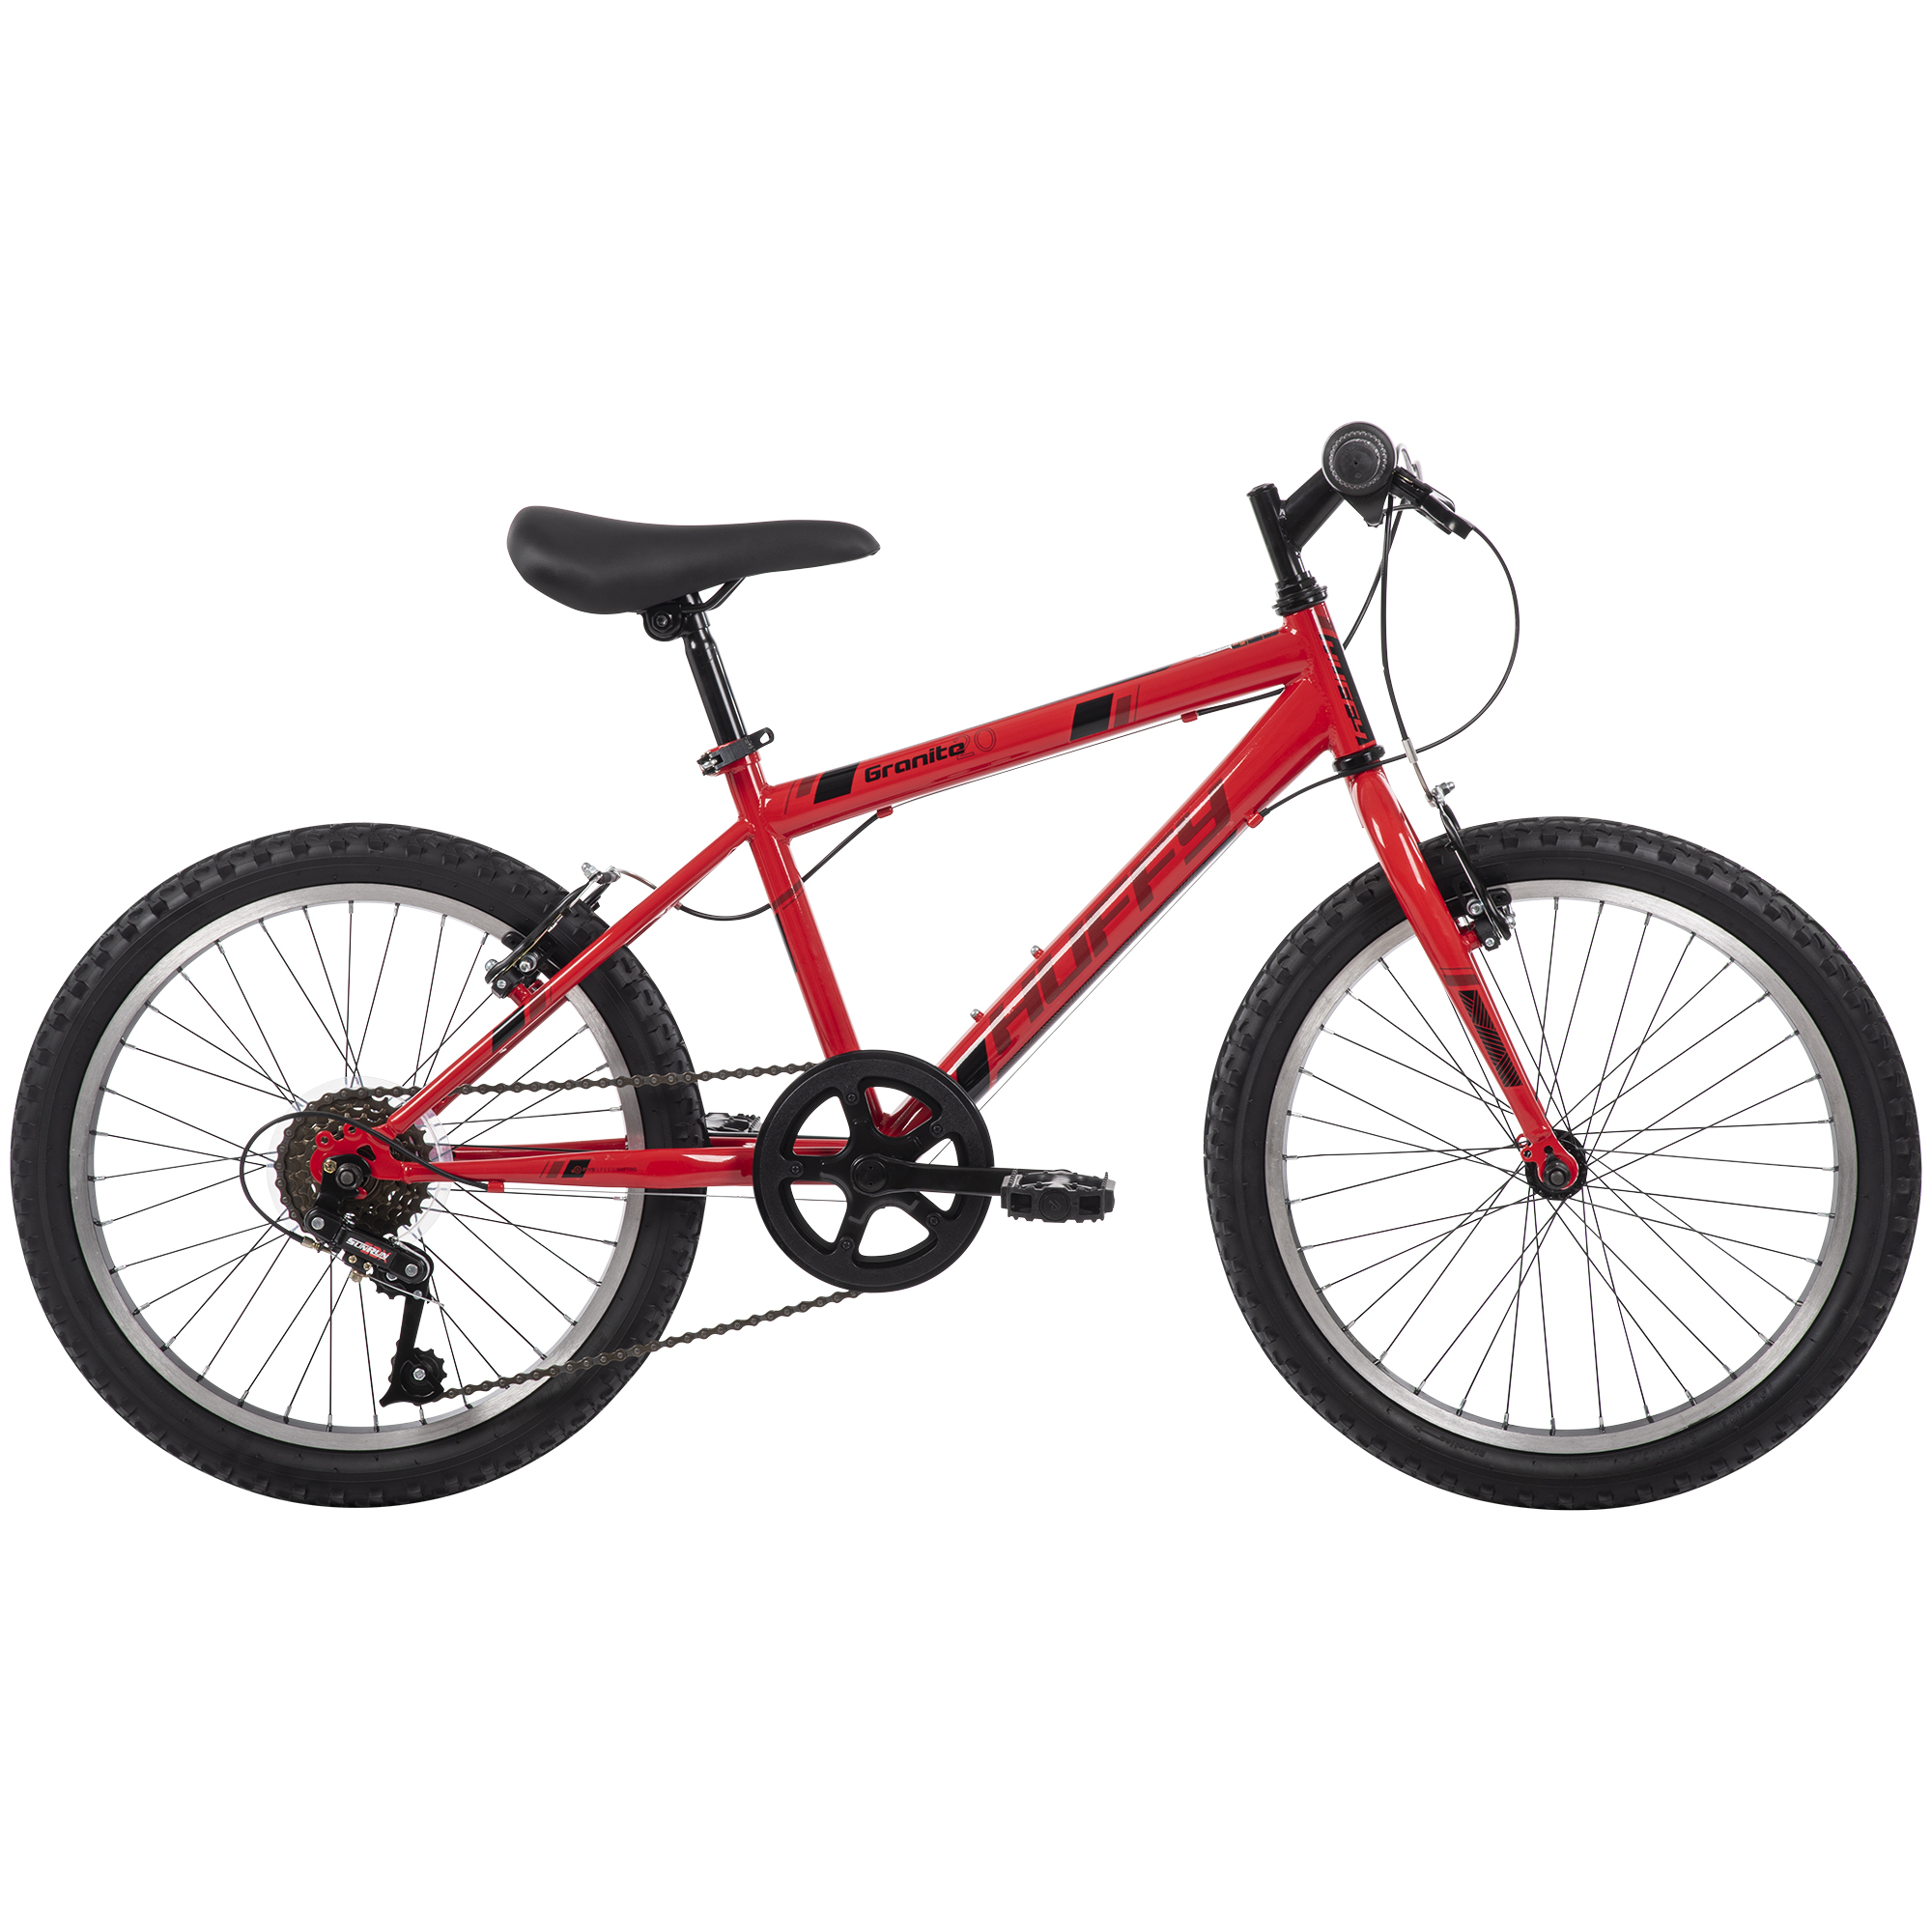 Boys Red, ENPBRANDS Bike, – Huffy, 20-inch Granite Mountain